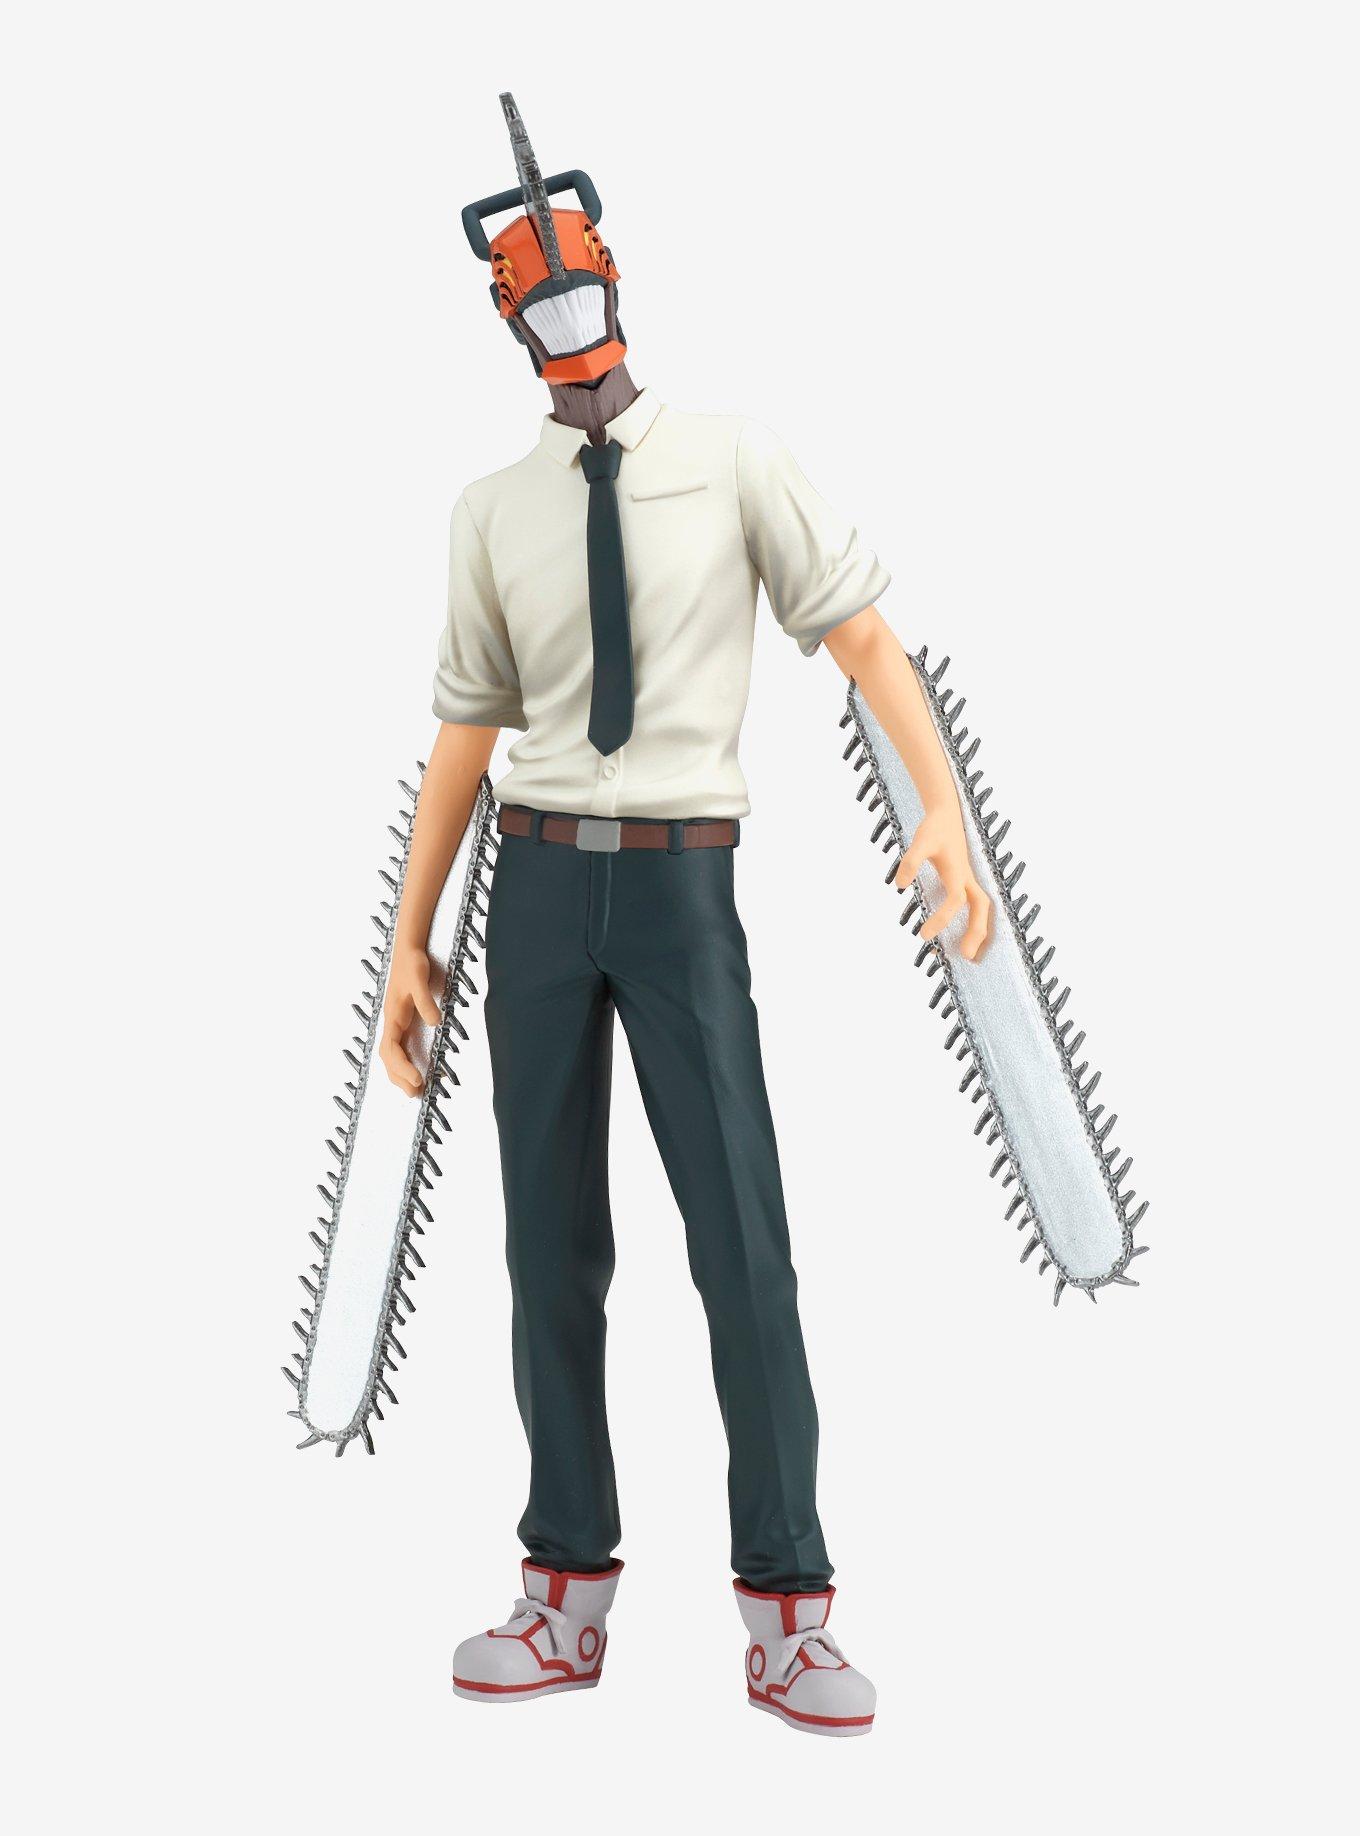 Denji Chainsaw Man Anime, Chainsaw Man Accessories